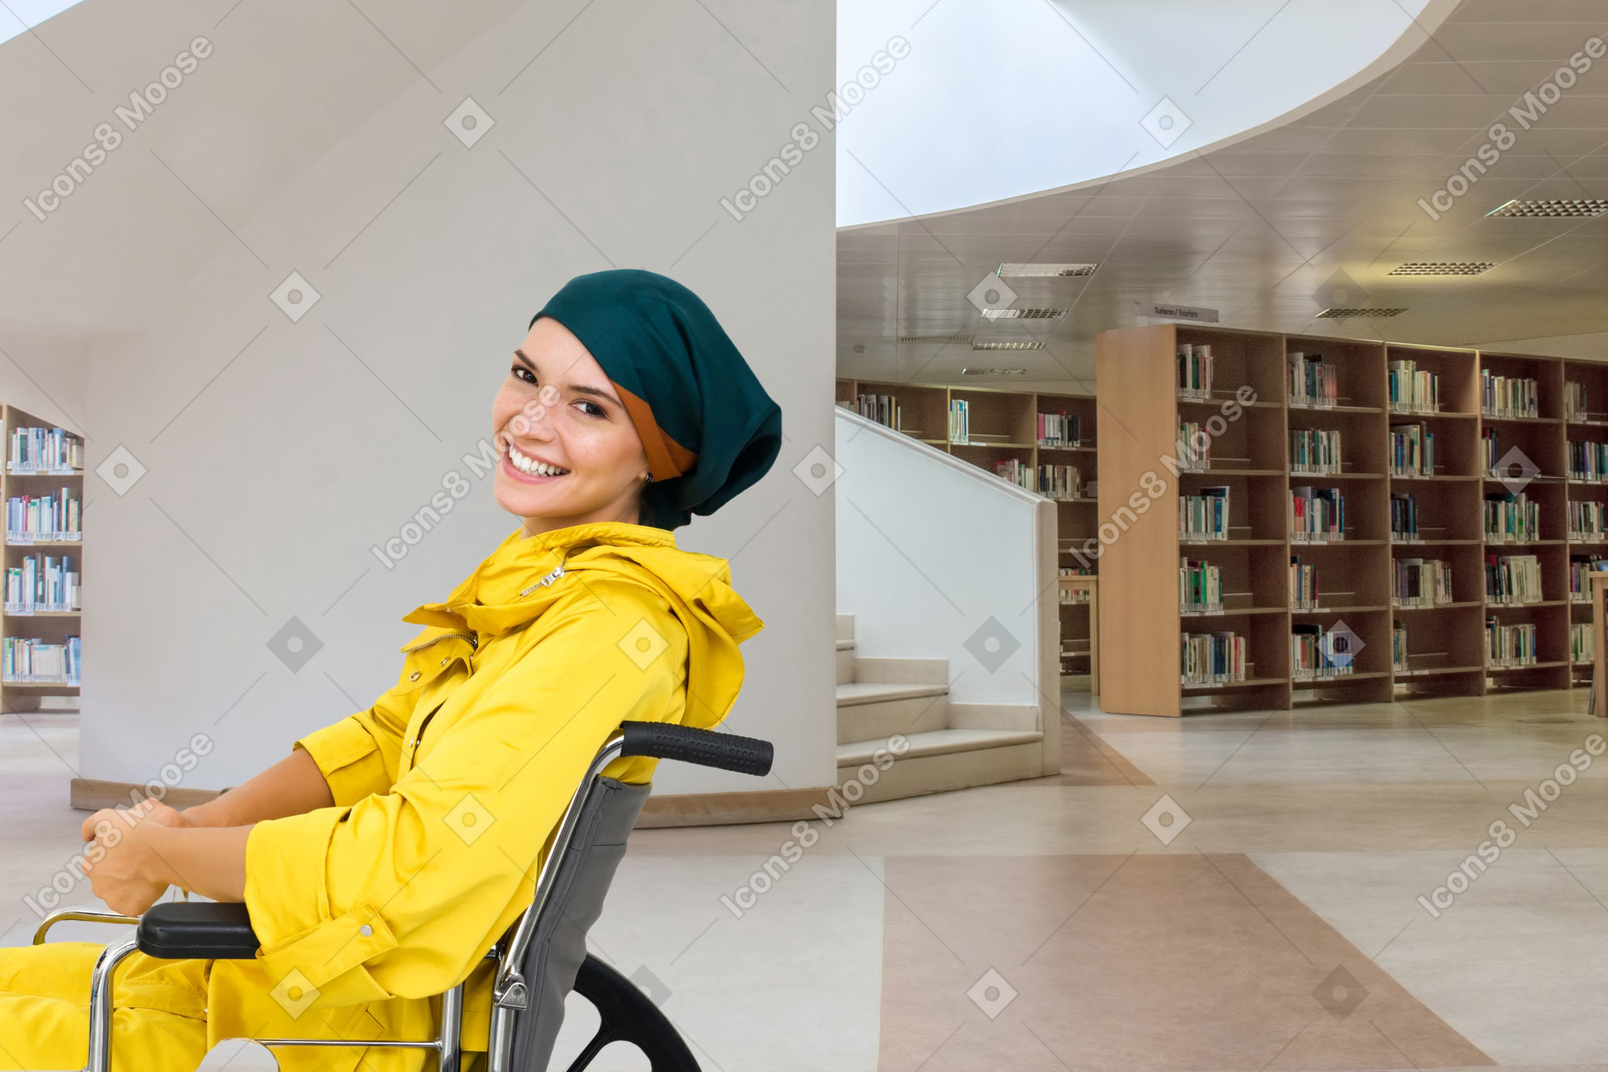 Homme handicapé en fauteuil roulant dans une bibliothèque